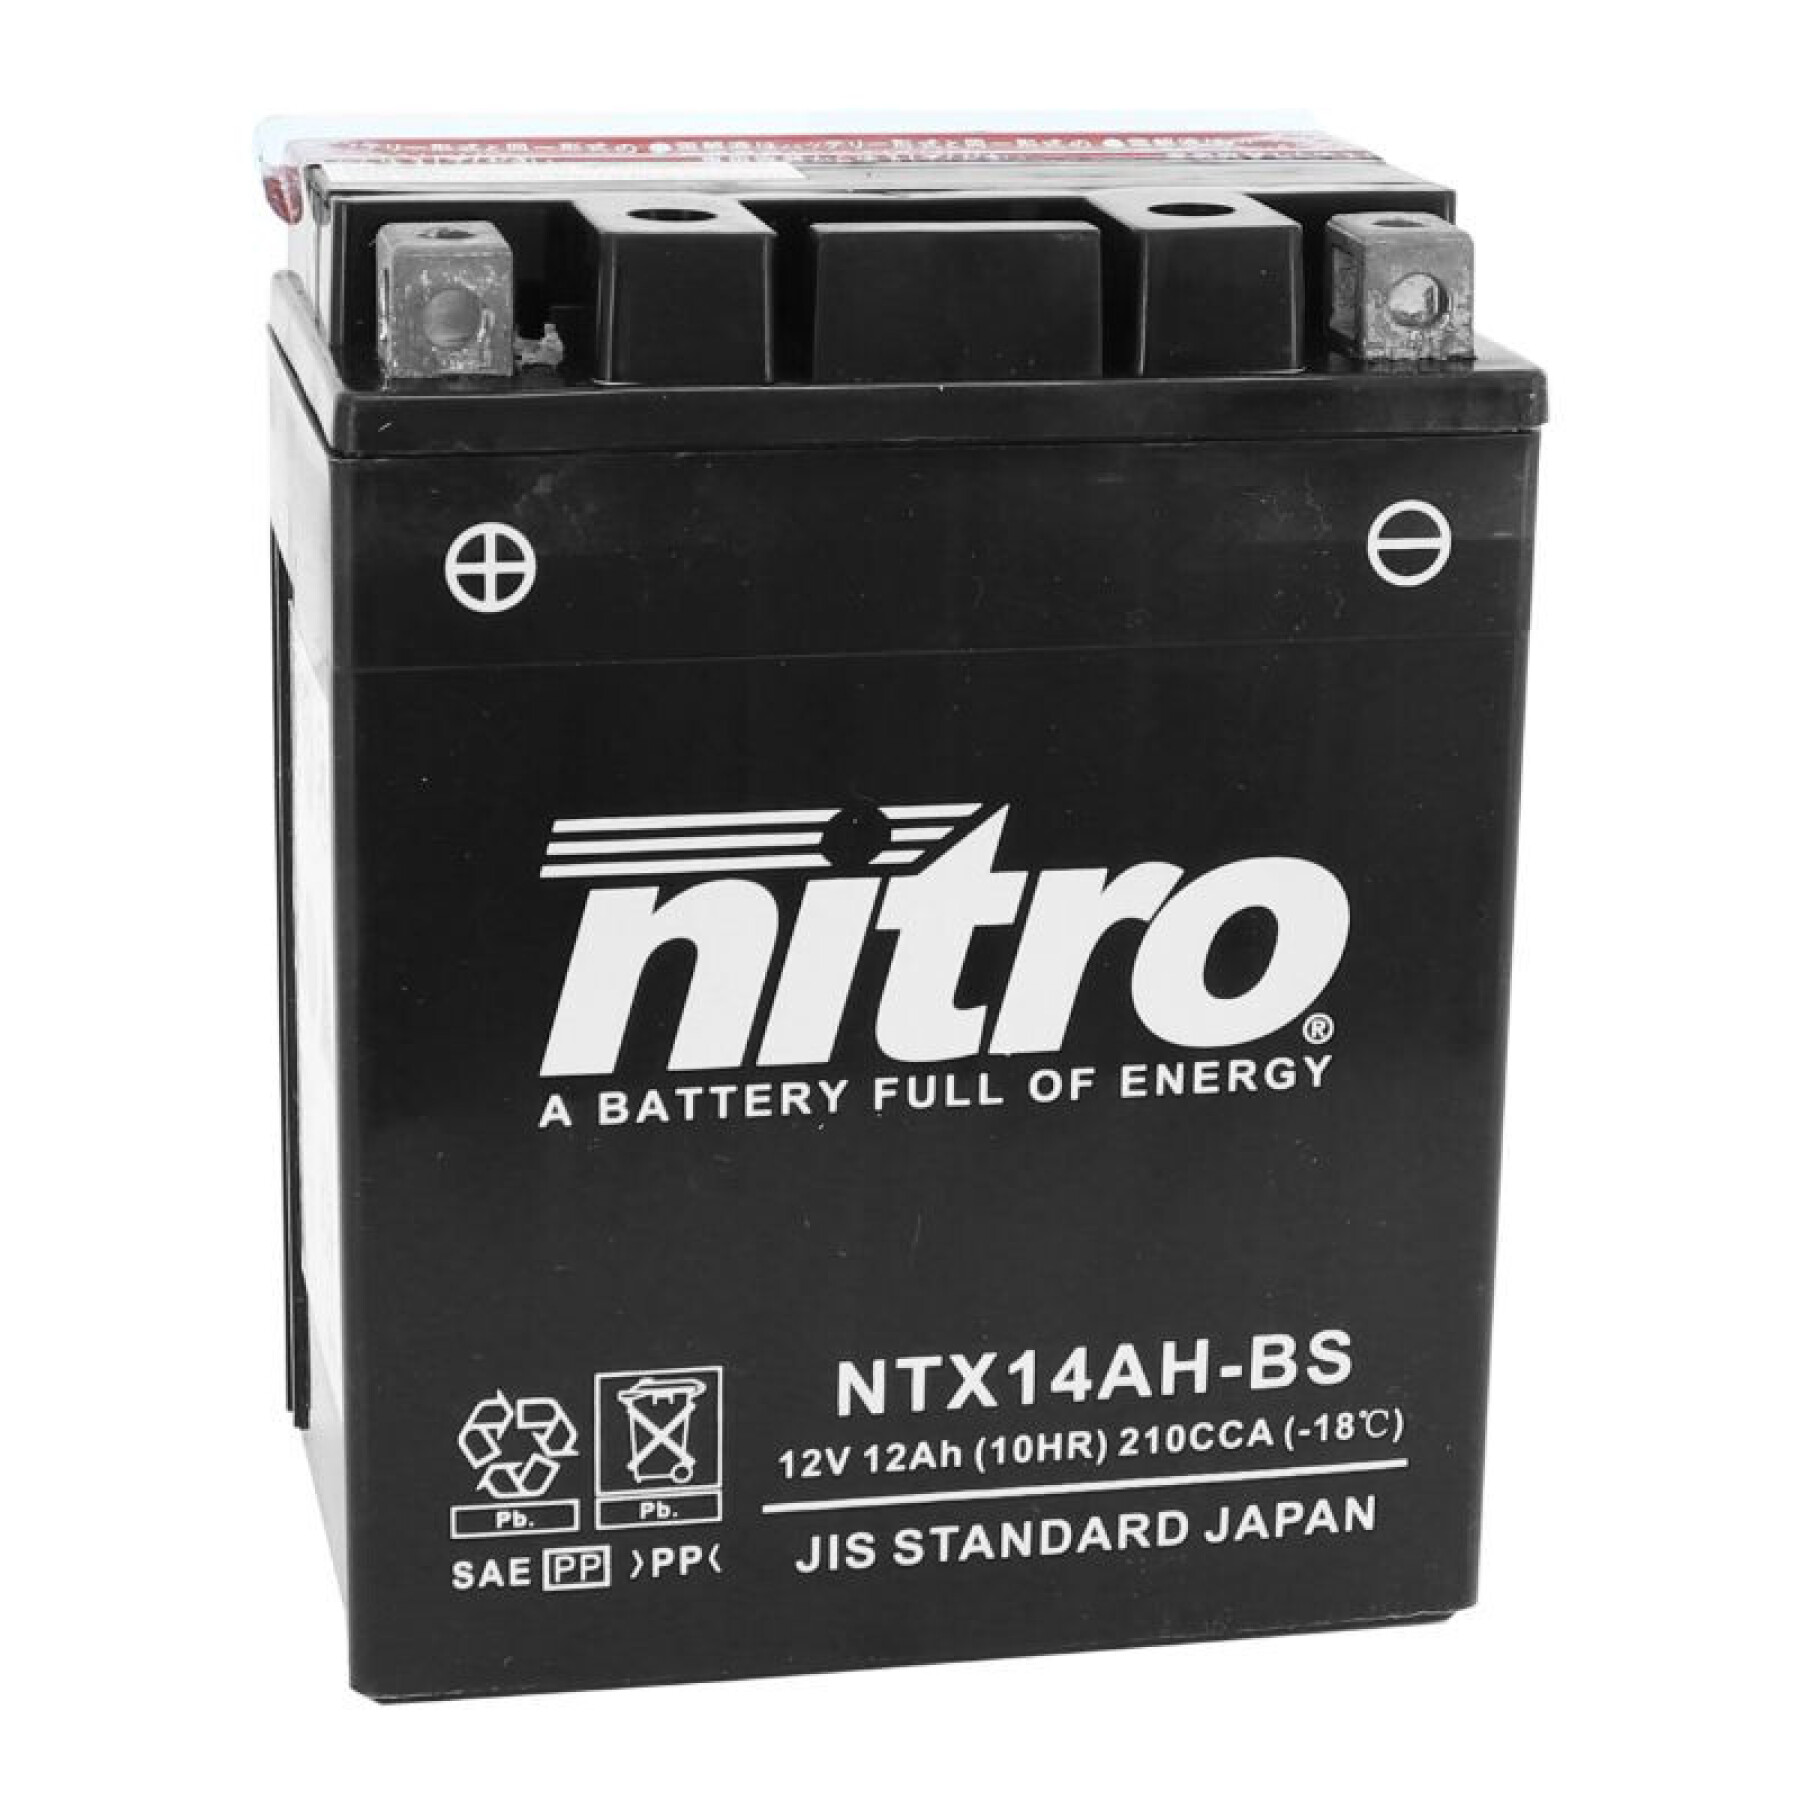 Batería Nitro Ntx14Ah -bs Mf 12v 12 Ah